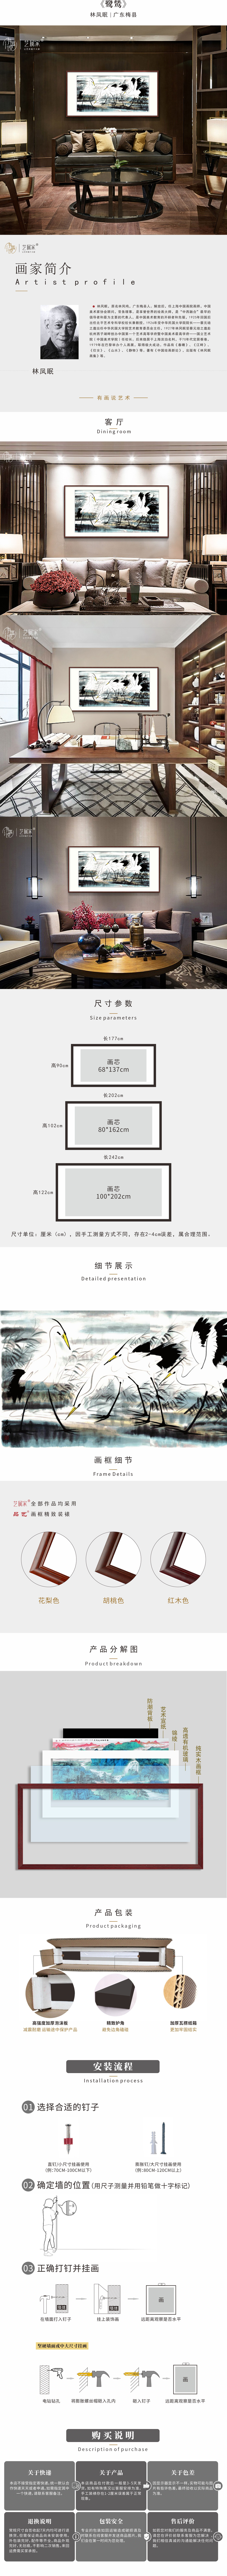 鹭鸶-林凤眠近现代2.jpg